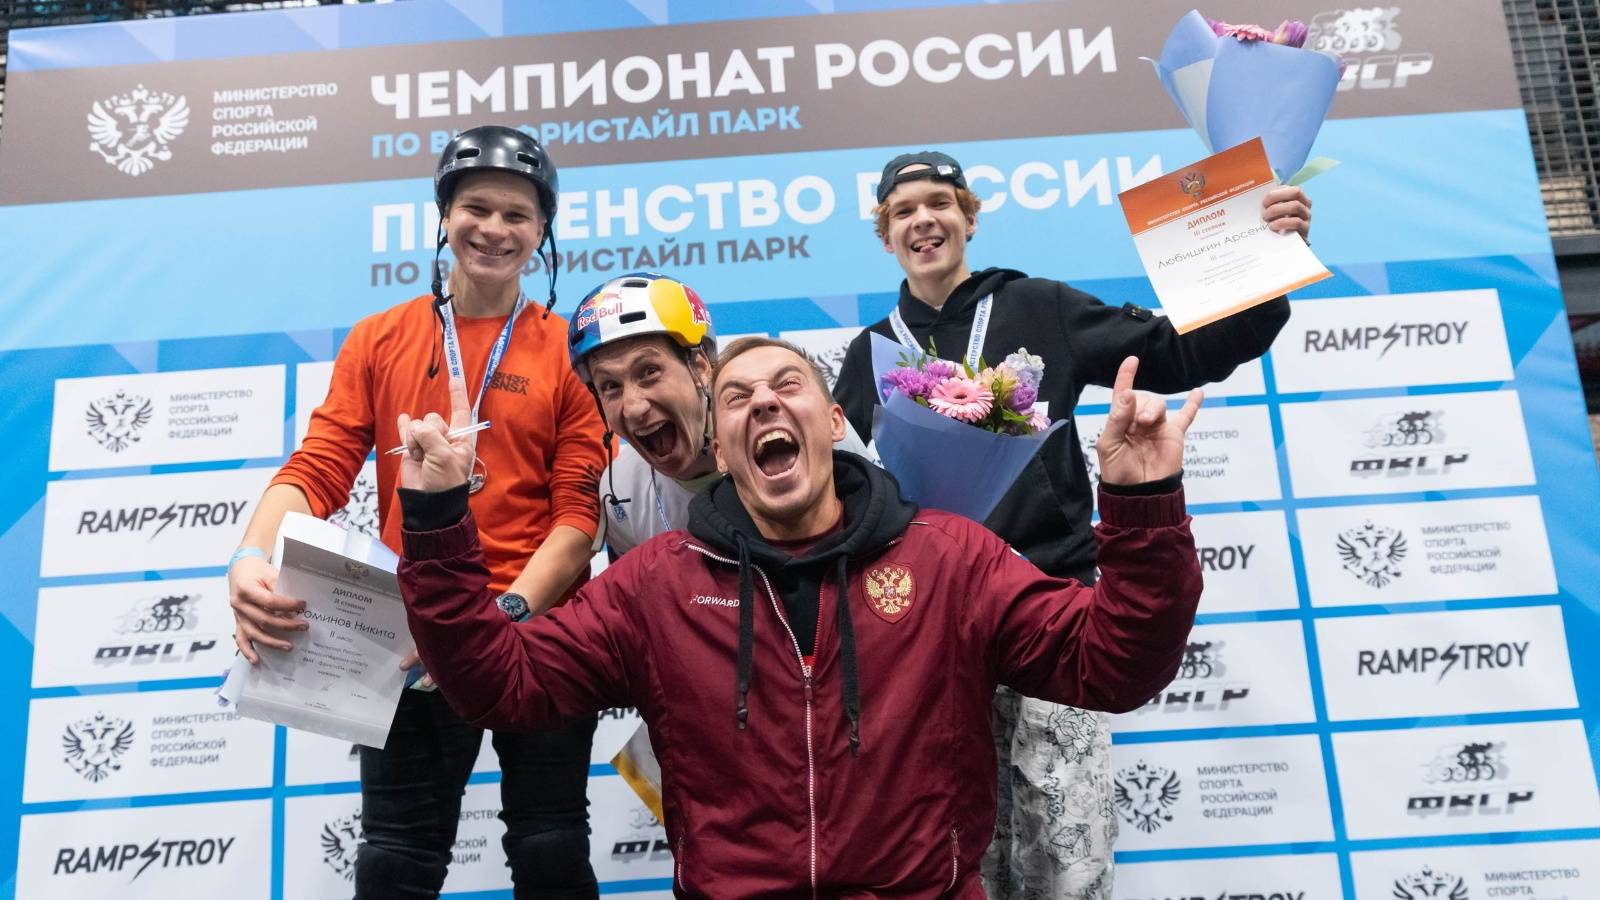 Известен состав сборной России по BMX-рейсу на чемпионате мира